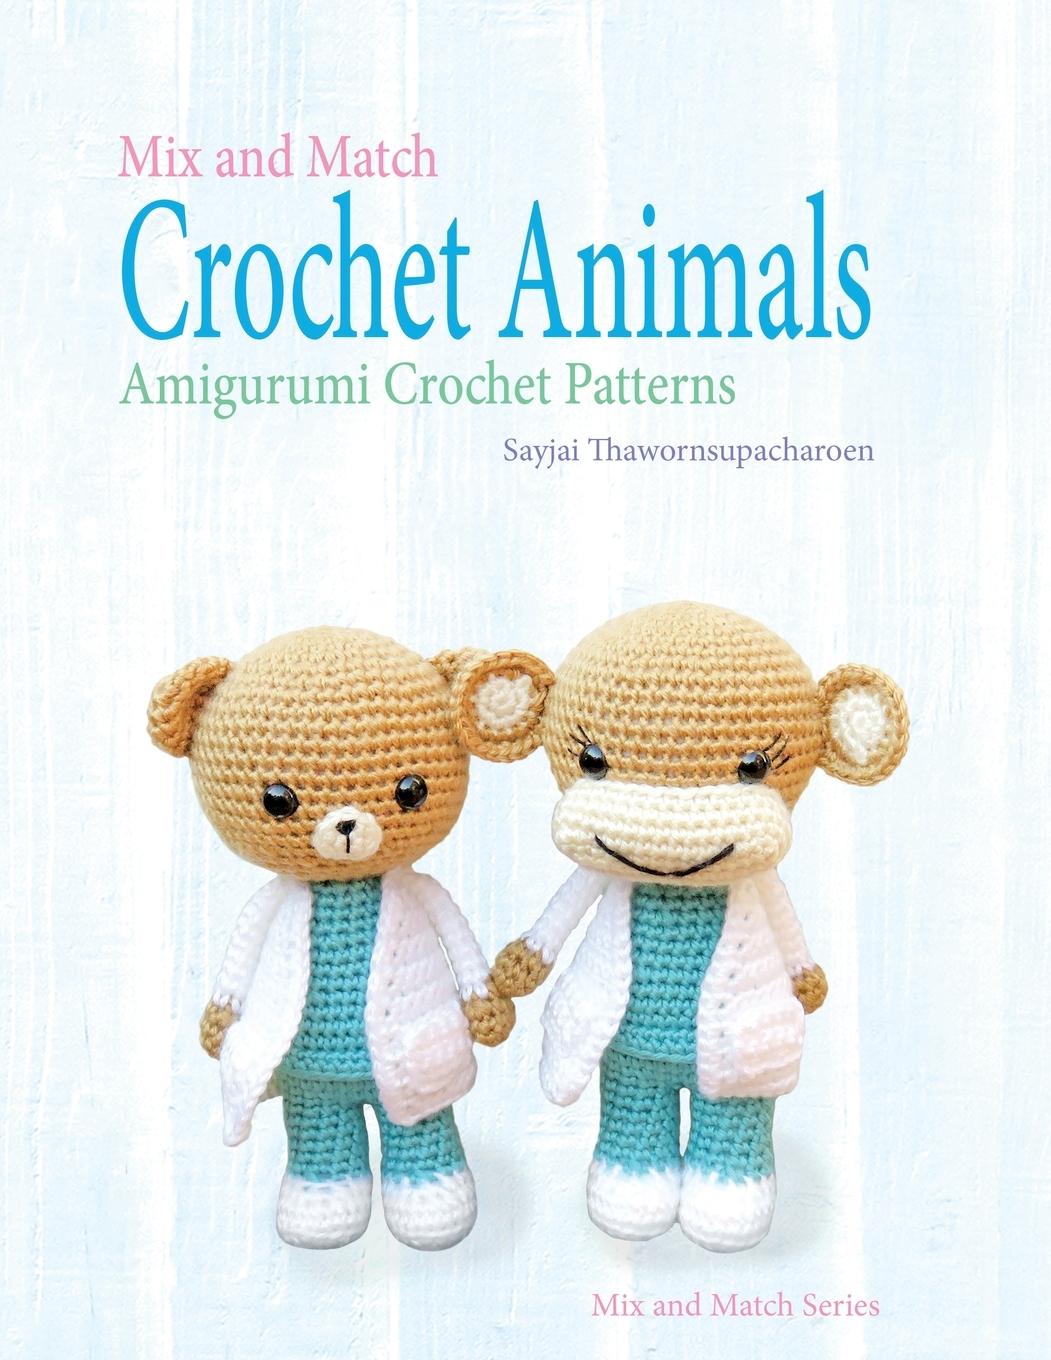 Book Mix and Match Crochet Animals Robert Appelboom